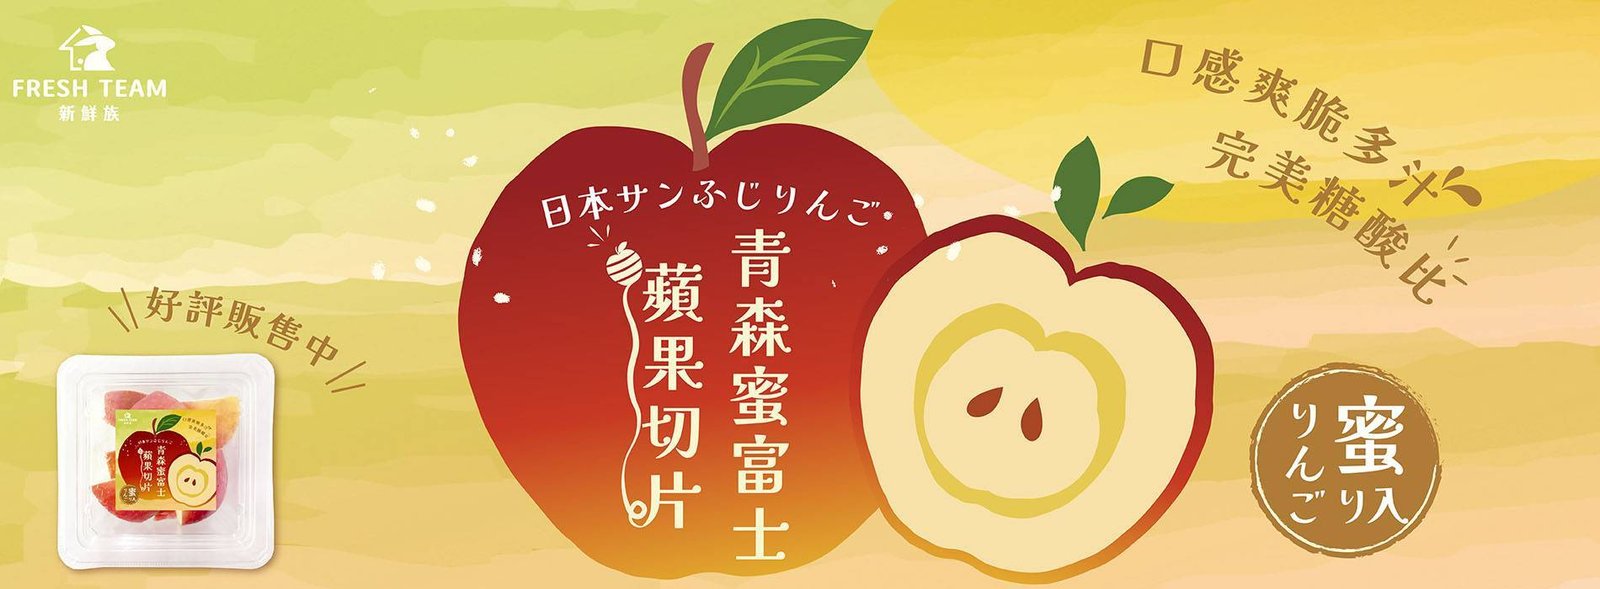 新鮮族-青森蜜蘋果